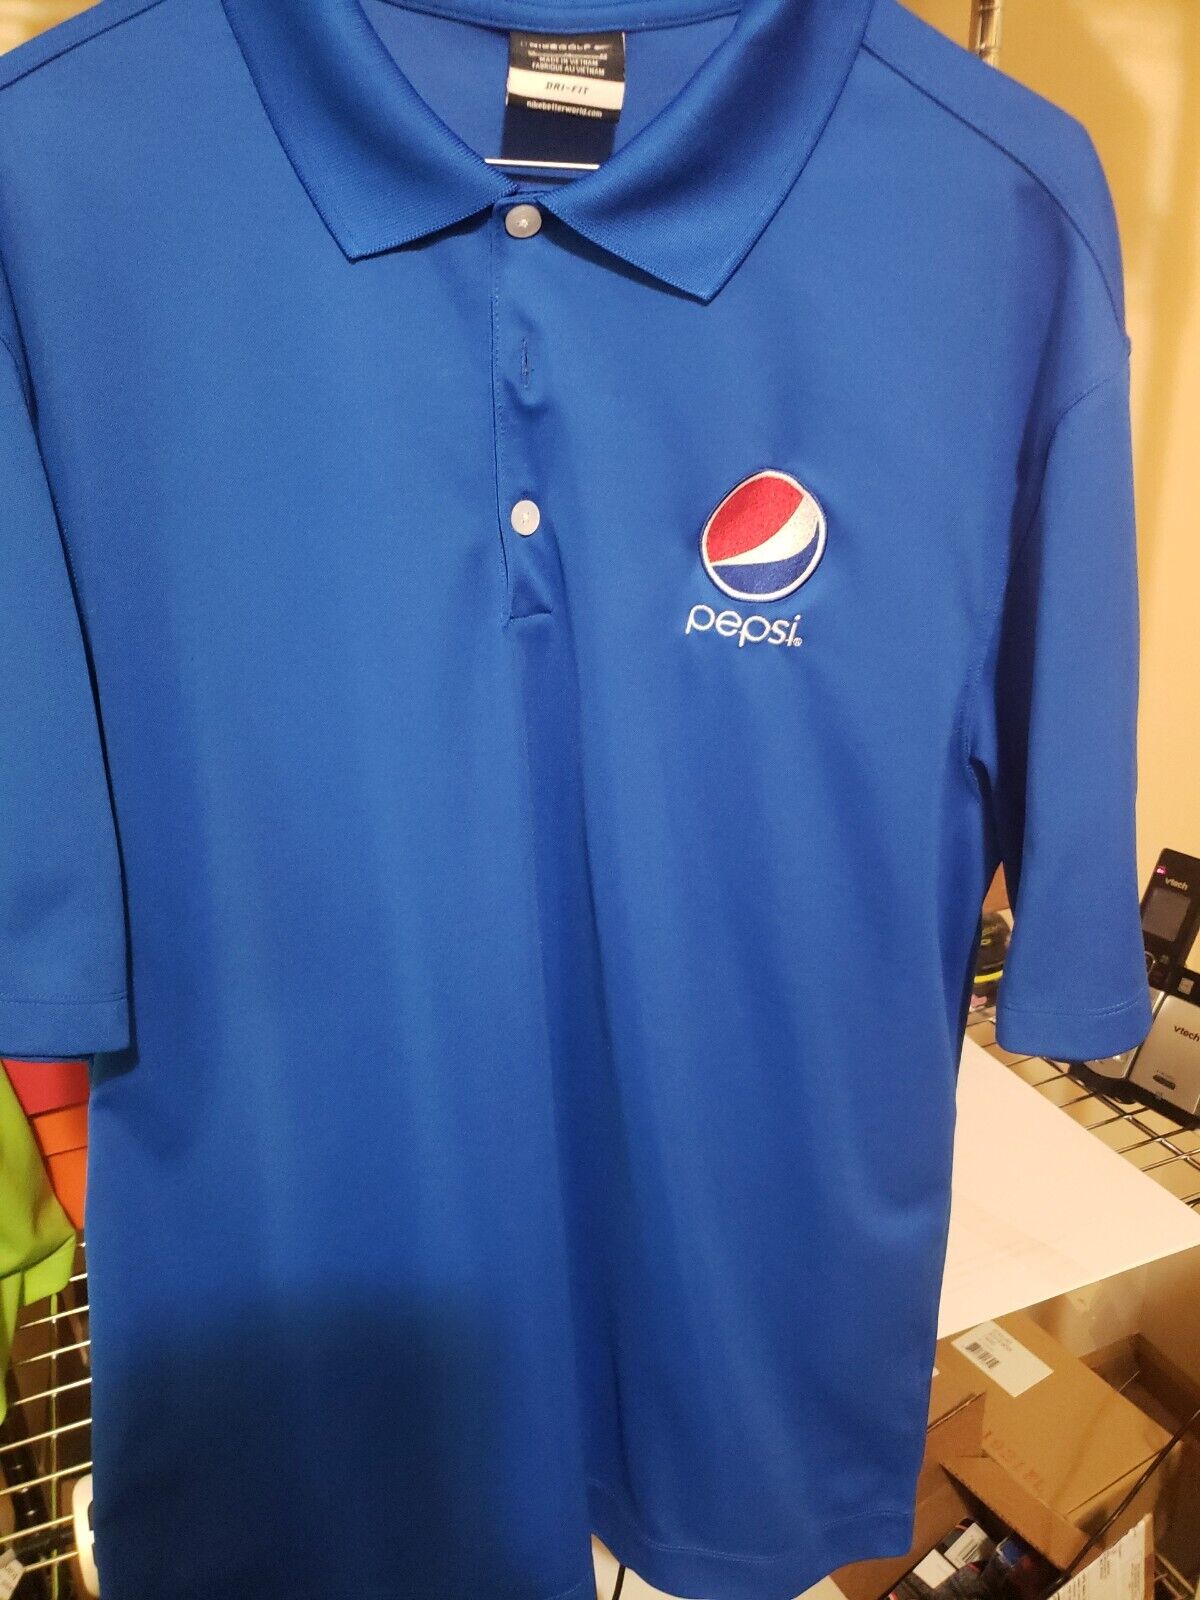 Pepsi Polo Style Button Shirt Mens Size Medium  Nike